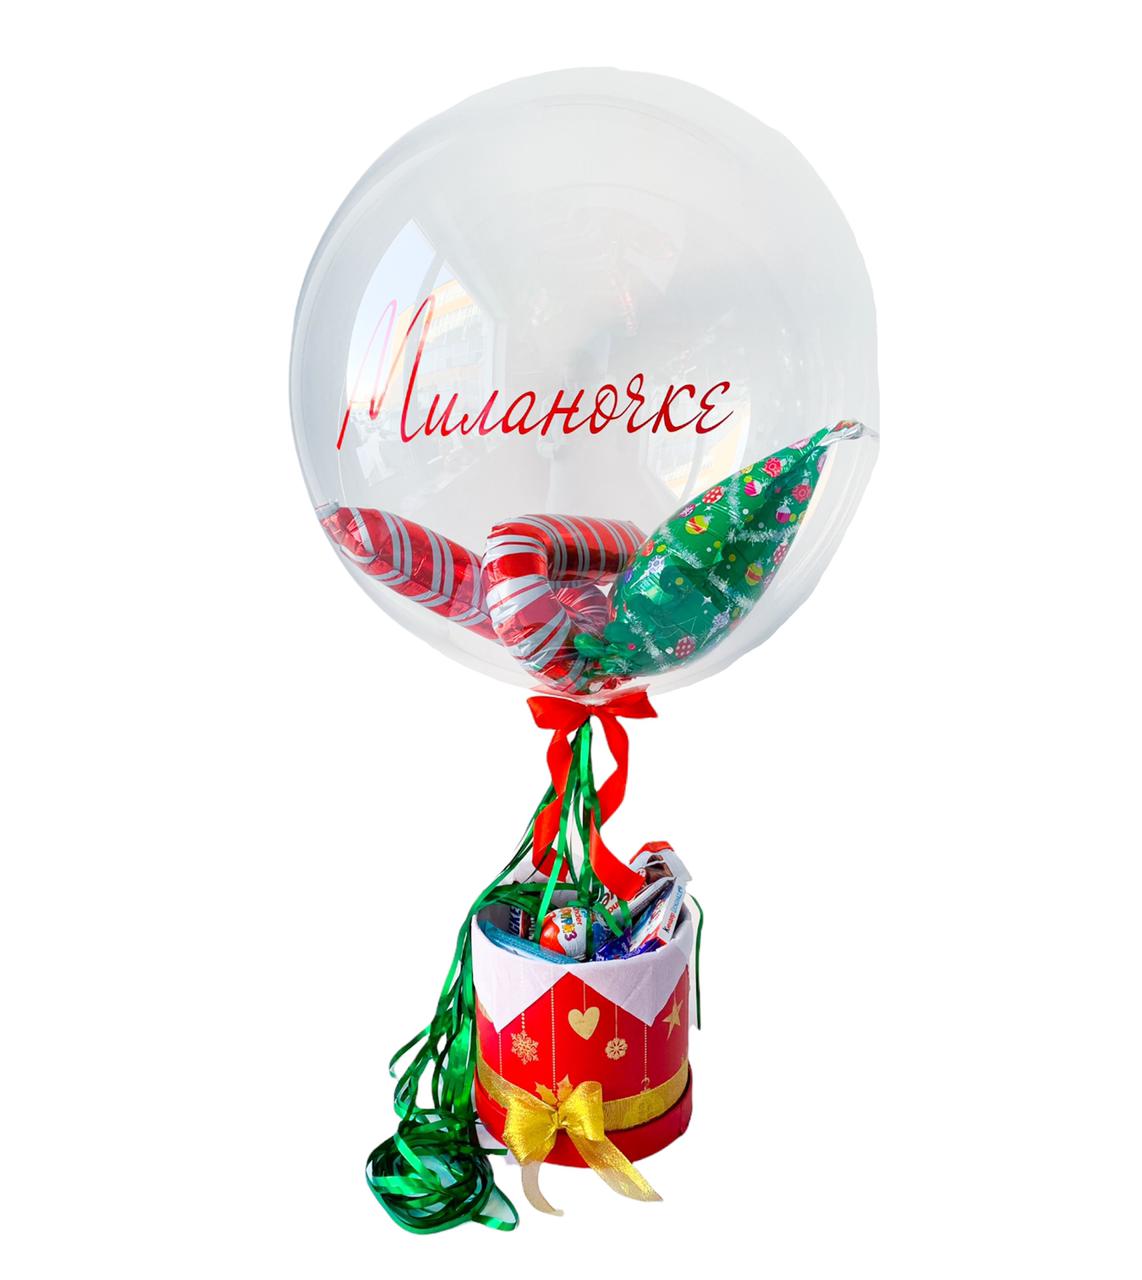 - Сладкий набор в тематической упаковке размера М
- Гелиевый шар Баблс с новогодними воздушными игрушками и именной подписью